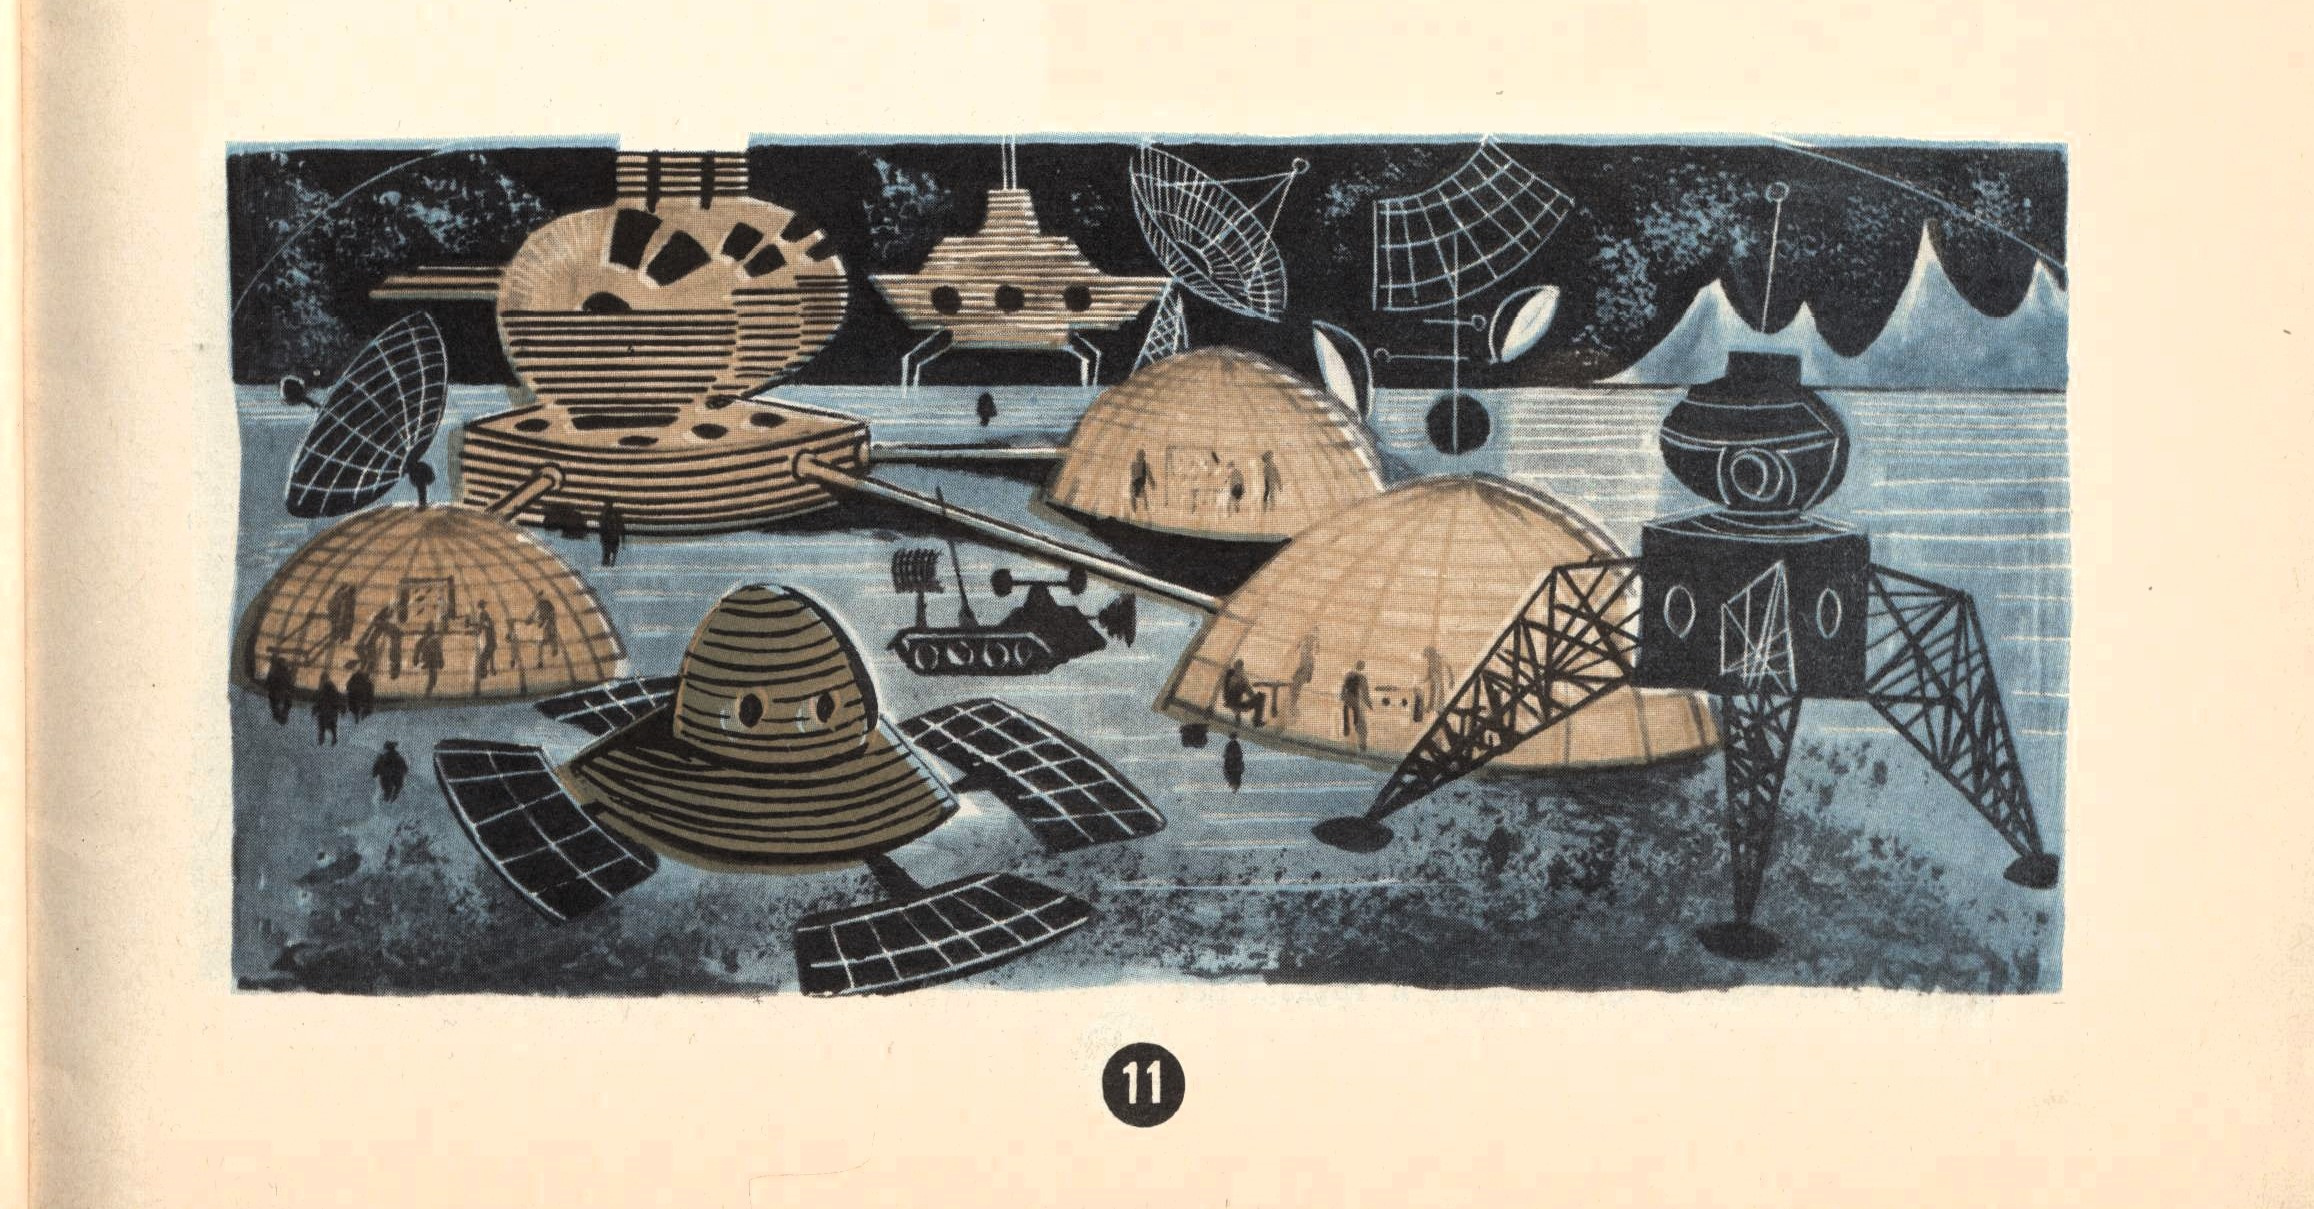 Поселок Марсианск. Рисунок из журнала «Пионер» <nobr class="_">№ 1 за 1970 год</nobr>. Художник <nobr class="_">Е. Медведев</nobr>.